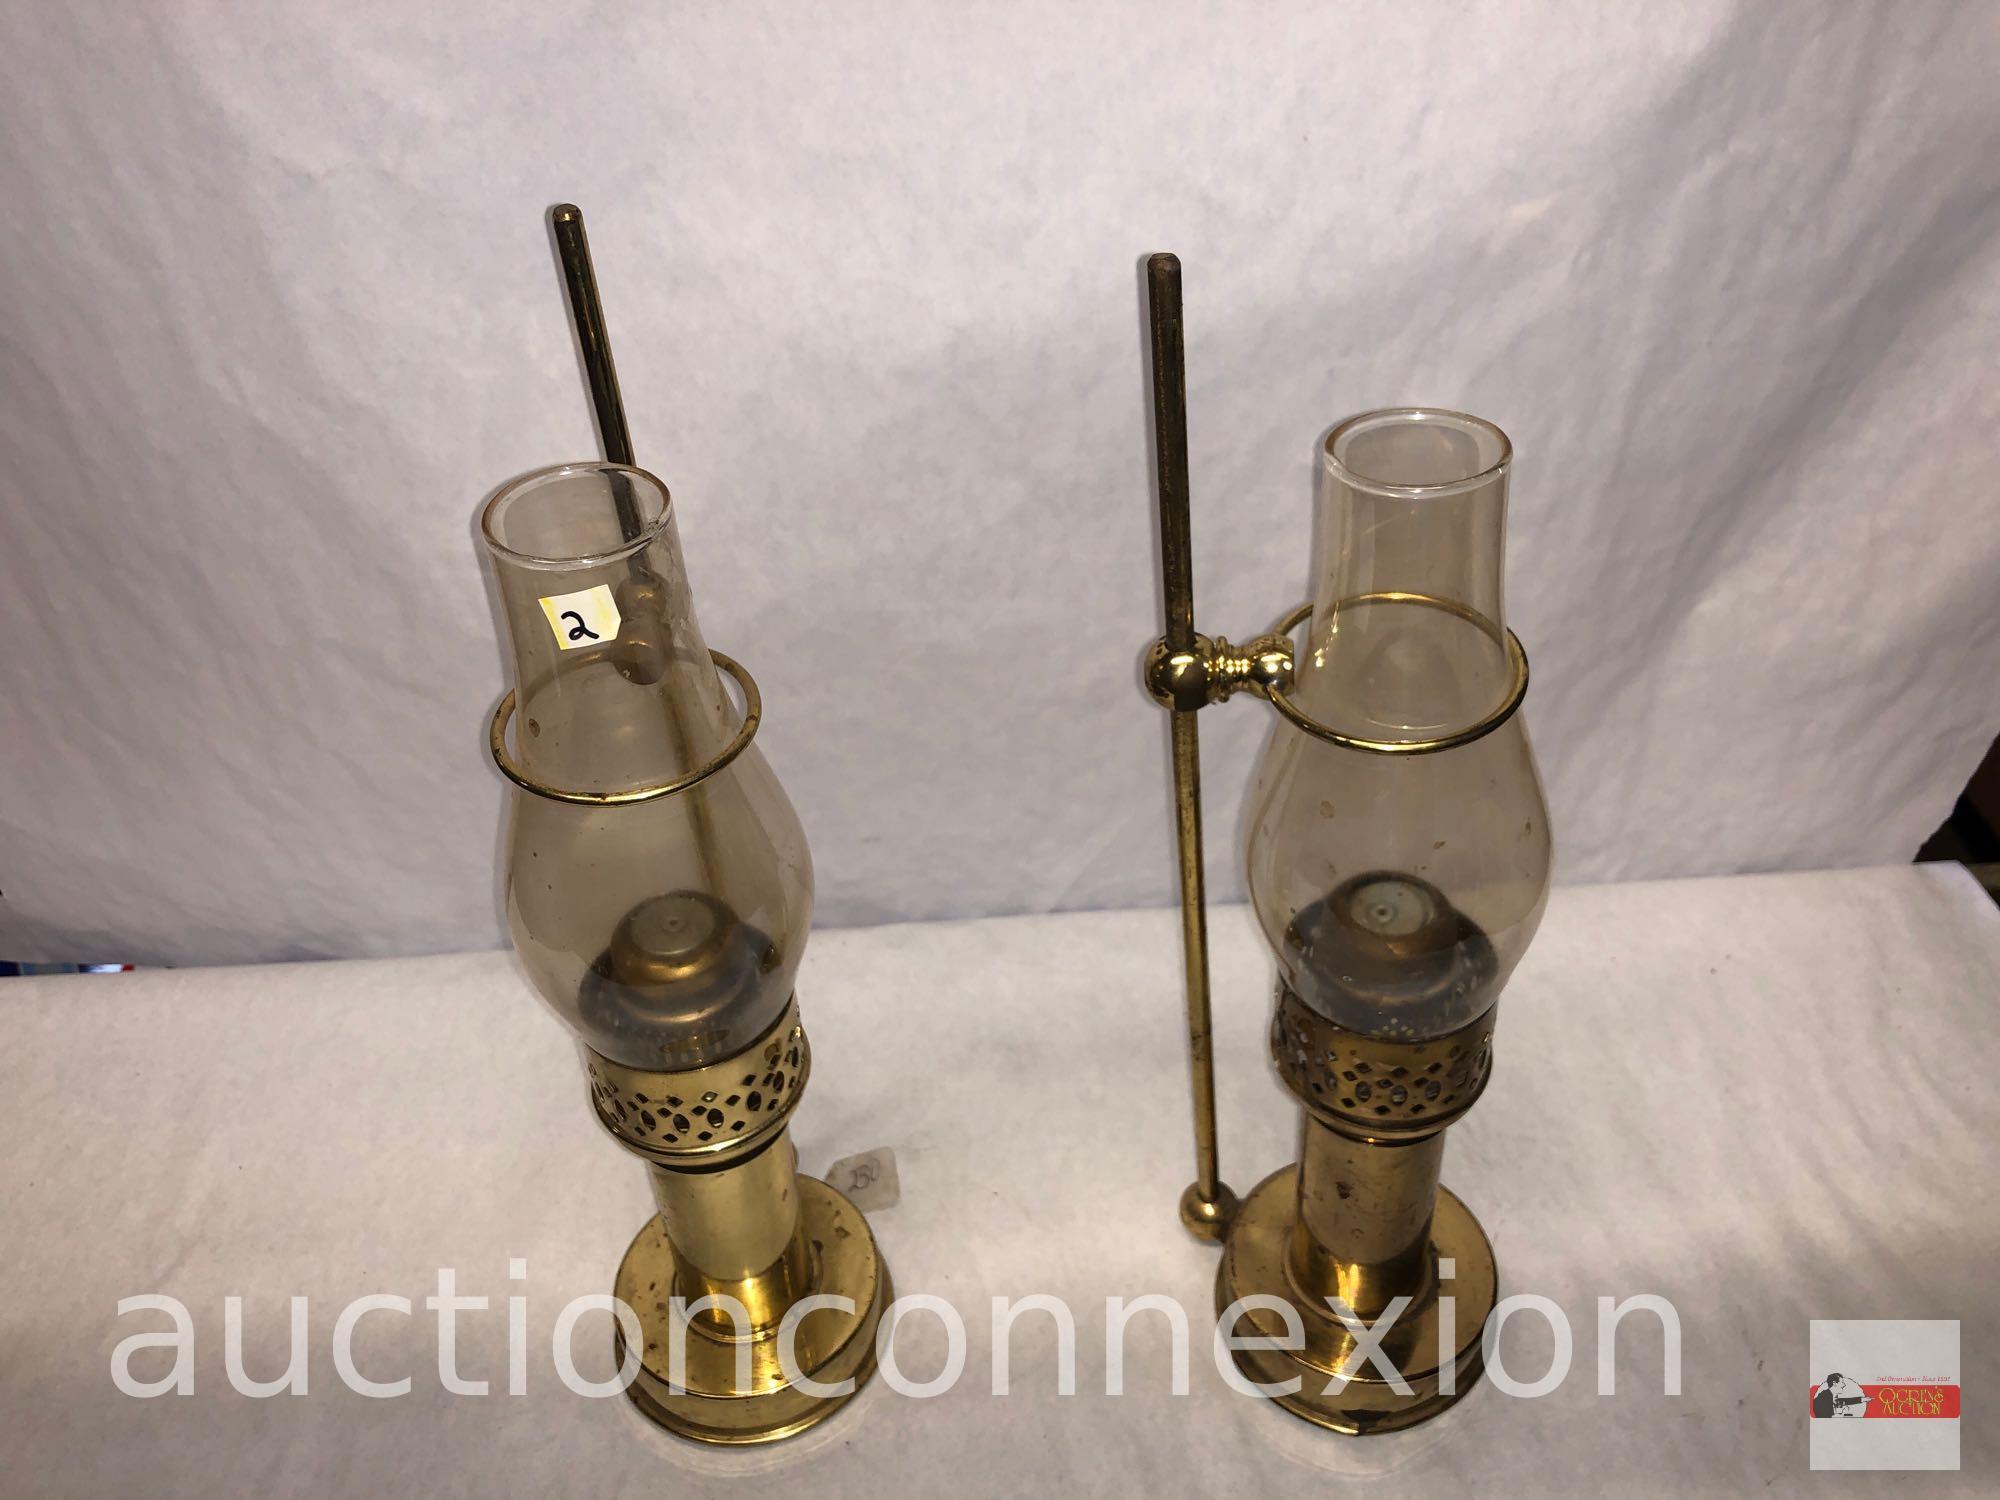 2 brass candlestick lanterns